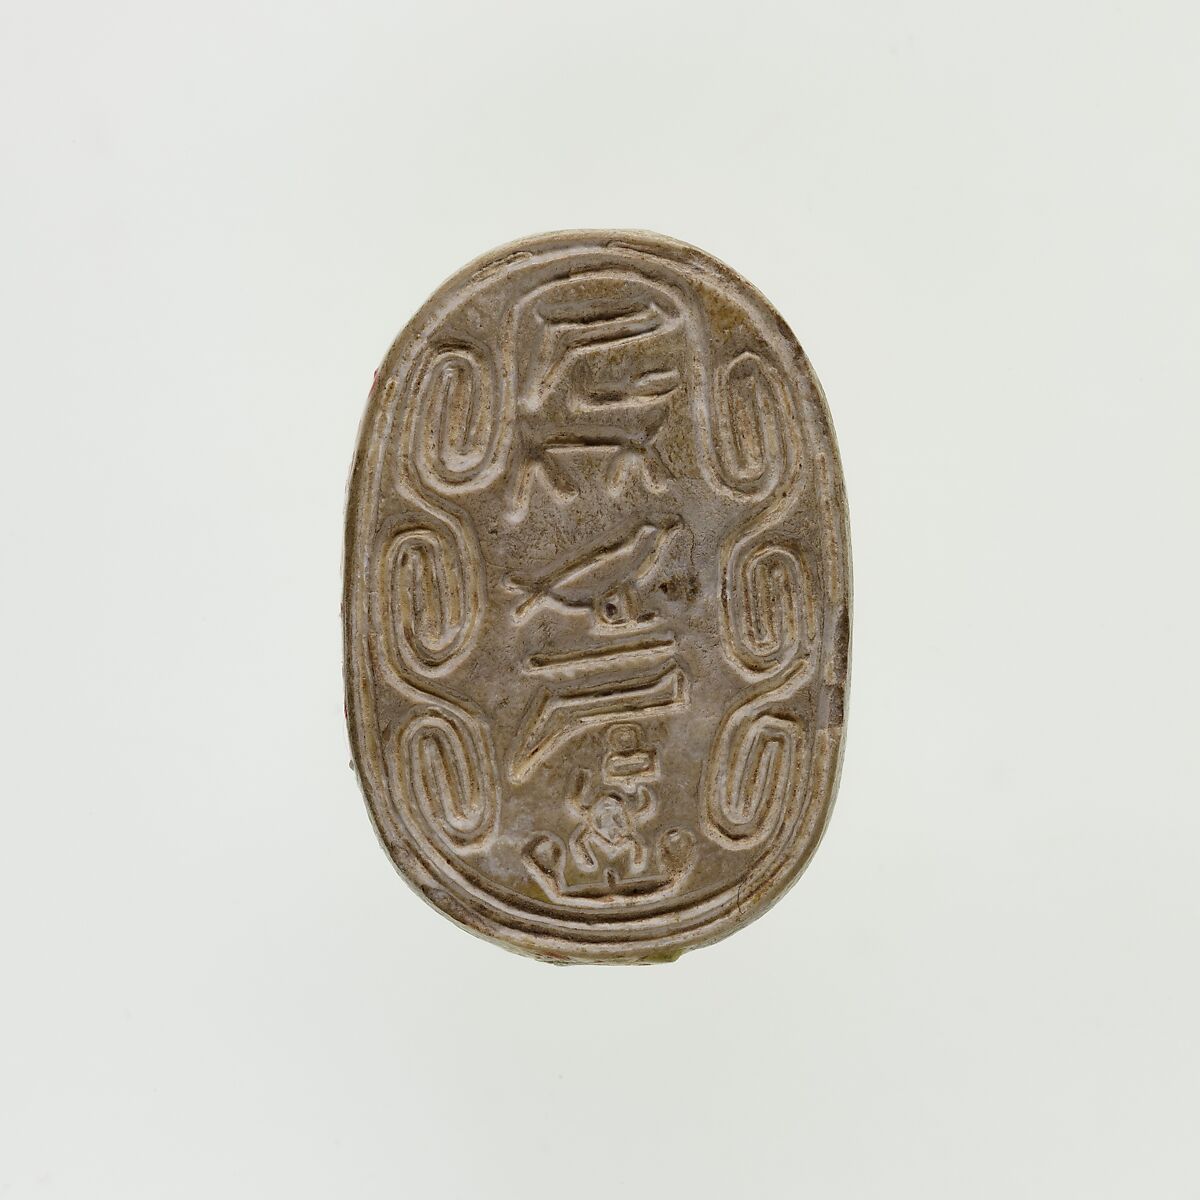 Scarab of the Chamberlain to the Treasurer Kheperka, Glazed steatite 